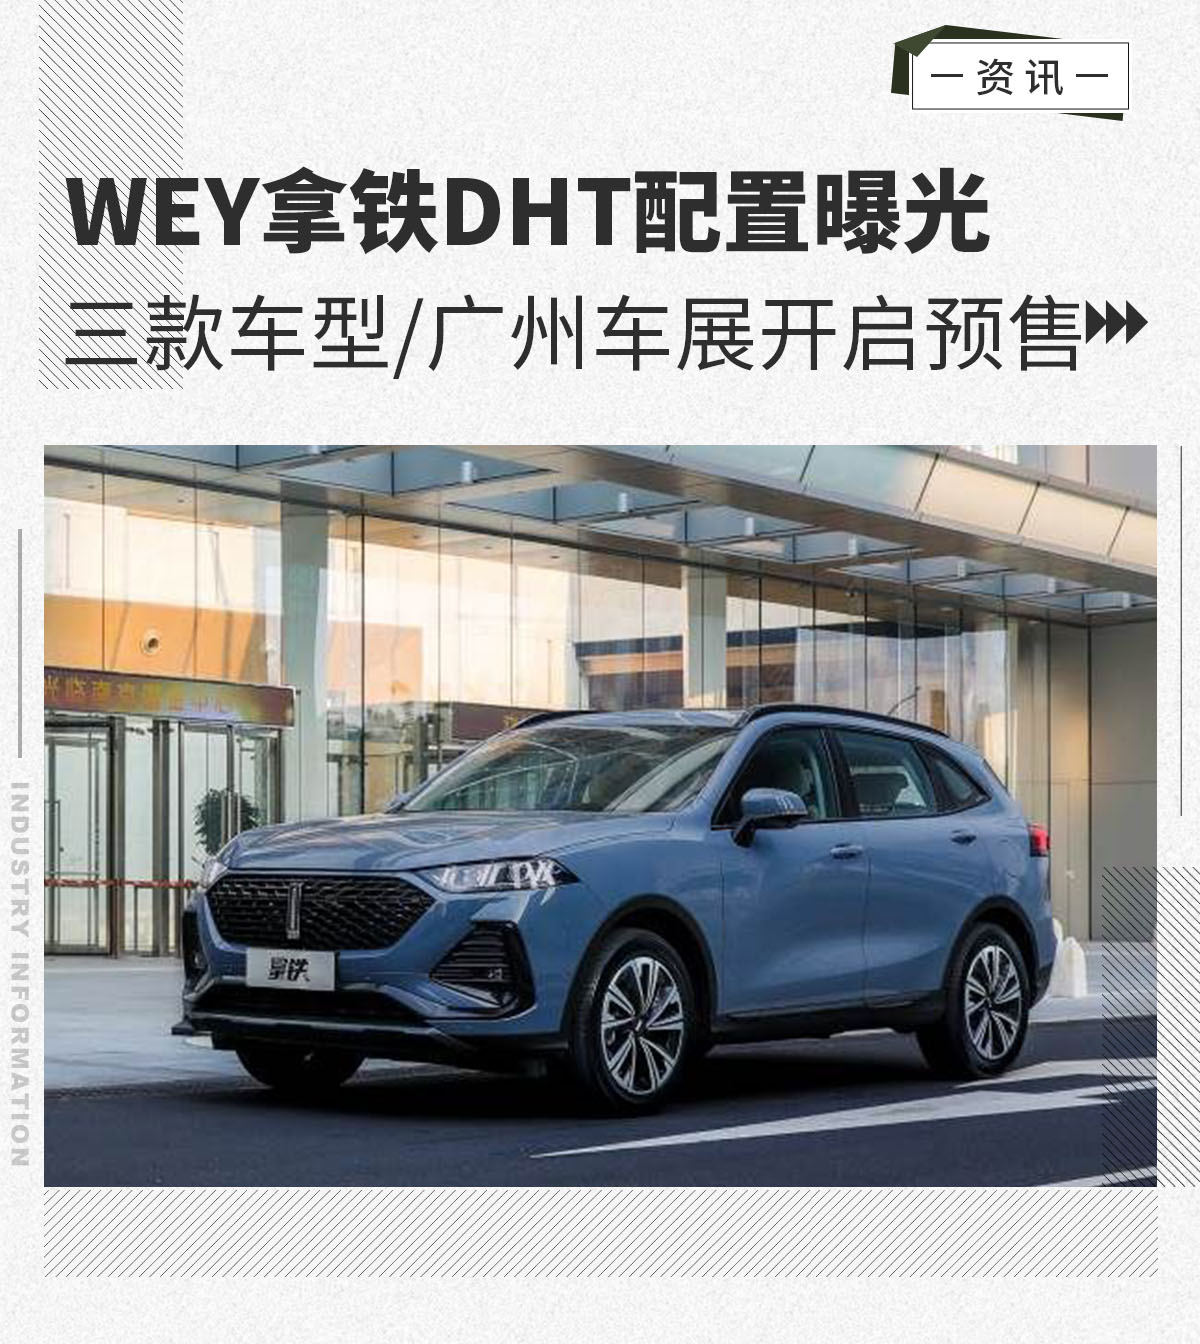 三款车型/广州车展开启预售 WEY拿铁DHT配置曝光